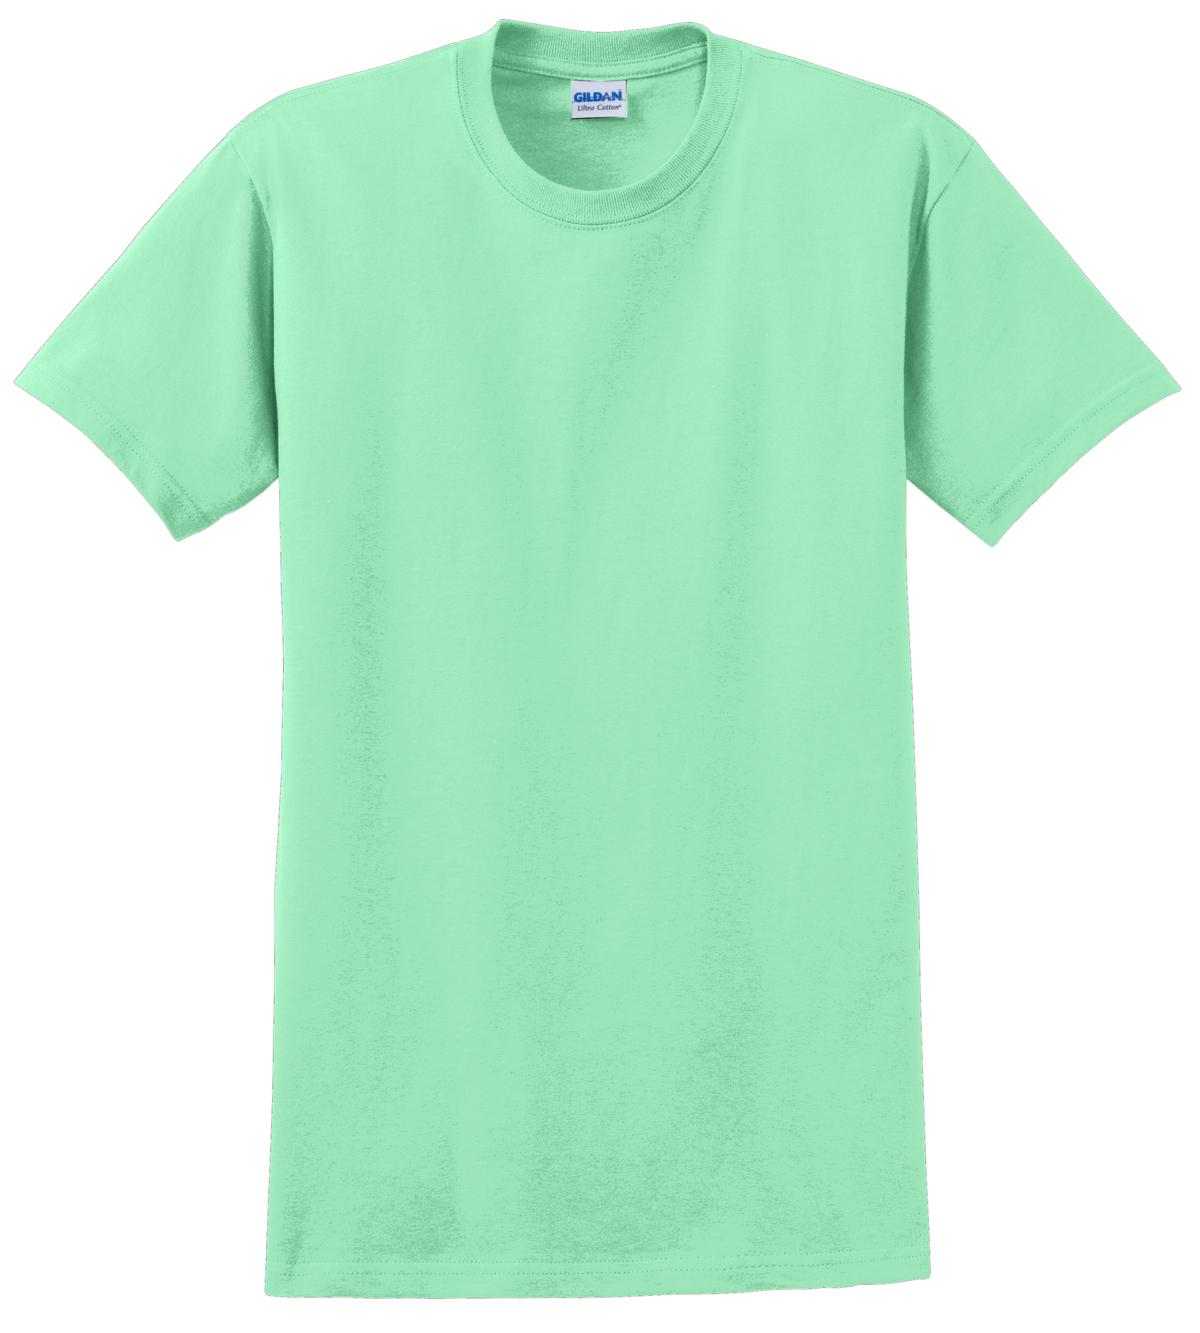 Gildan 2000 Ultra Cotton 100% Cotton T-Shirt - Mint Green - HIT a Double